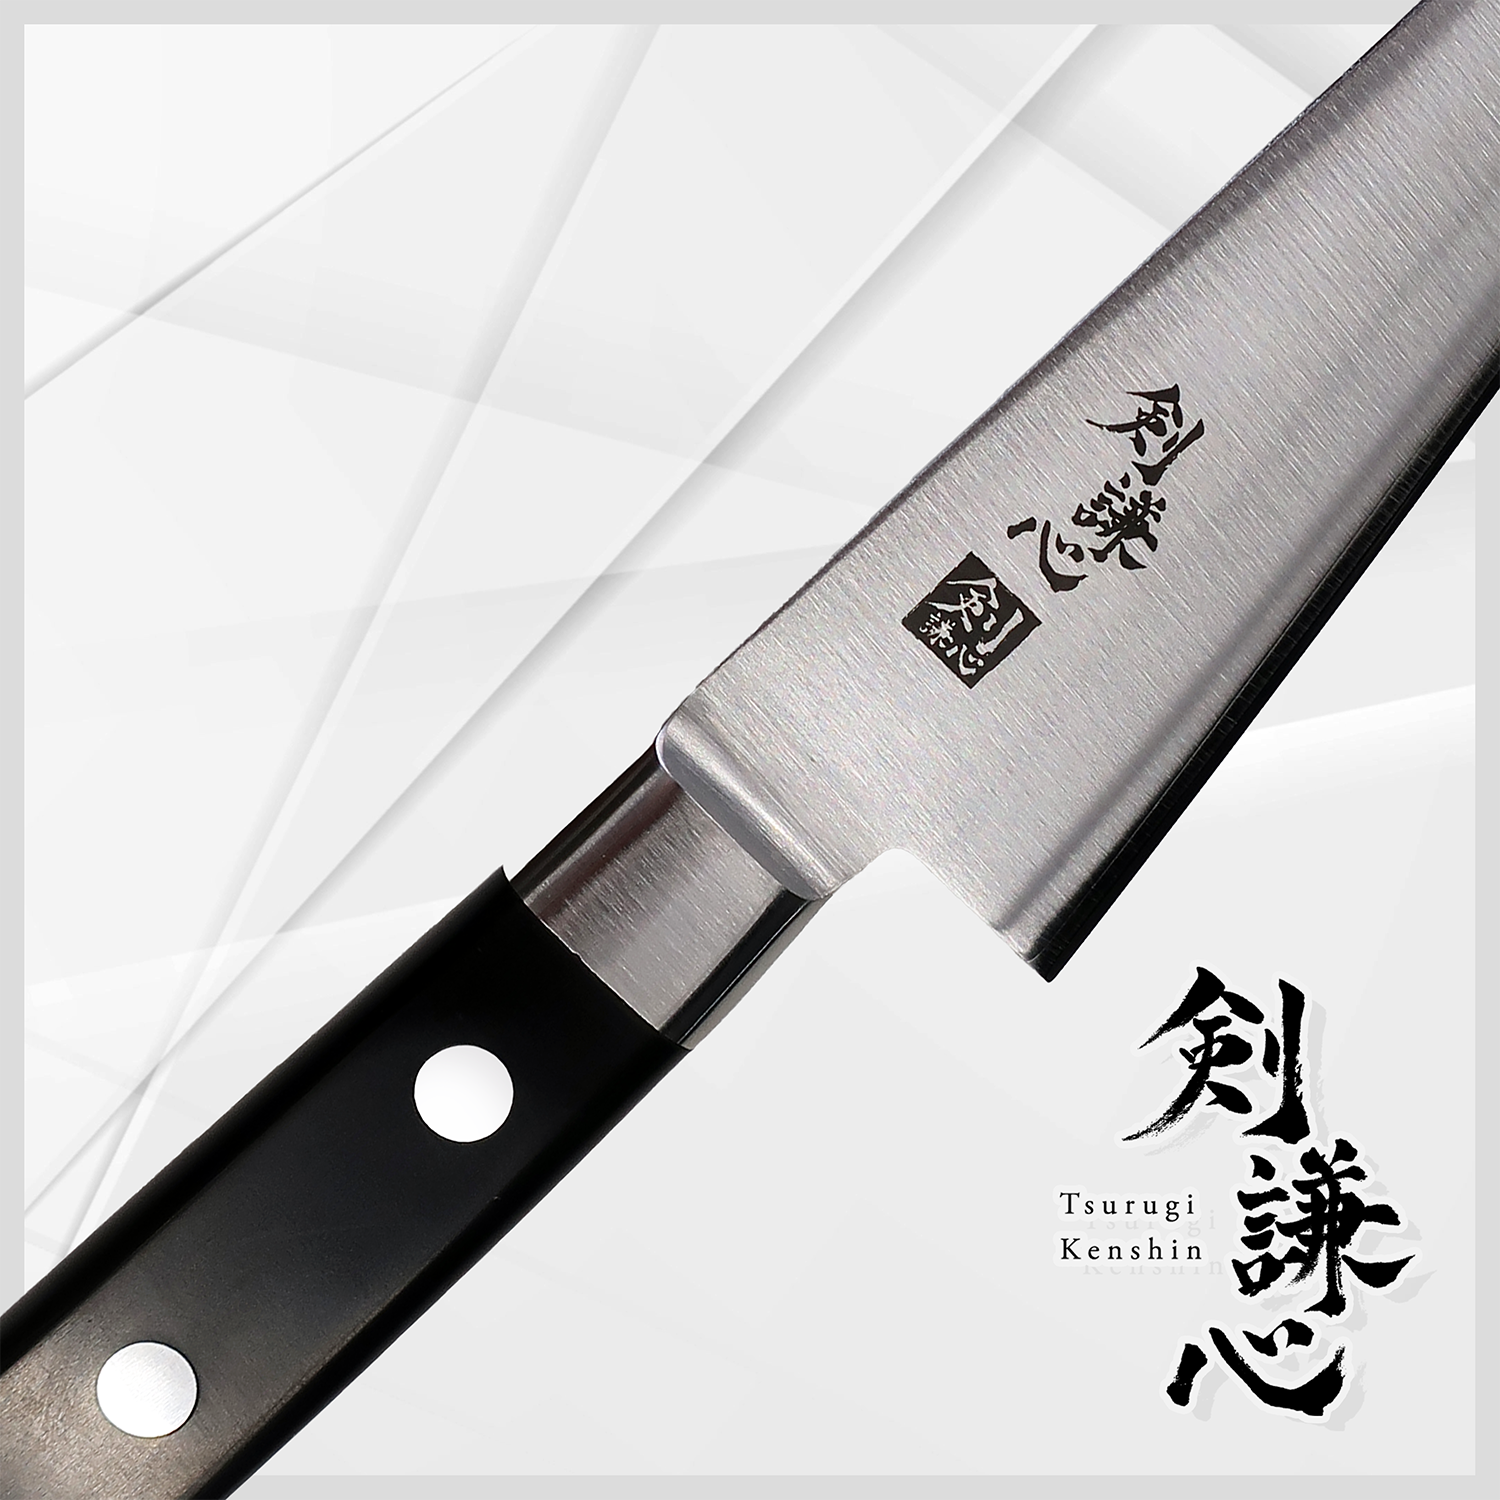 Tsurugi Kenshin Fish filleting knife/ Fish boning Knife 150mm